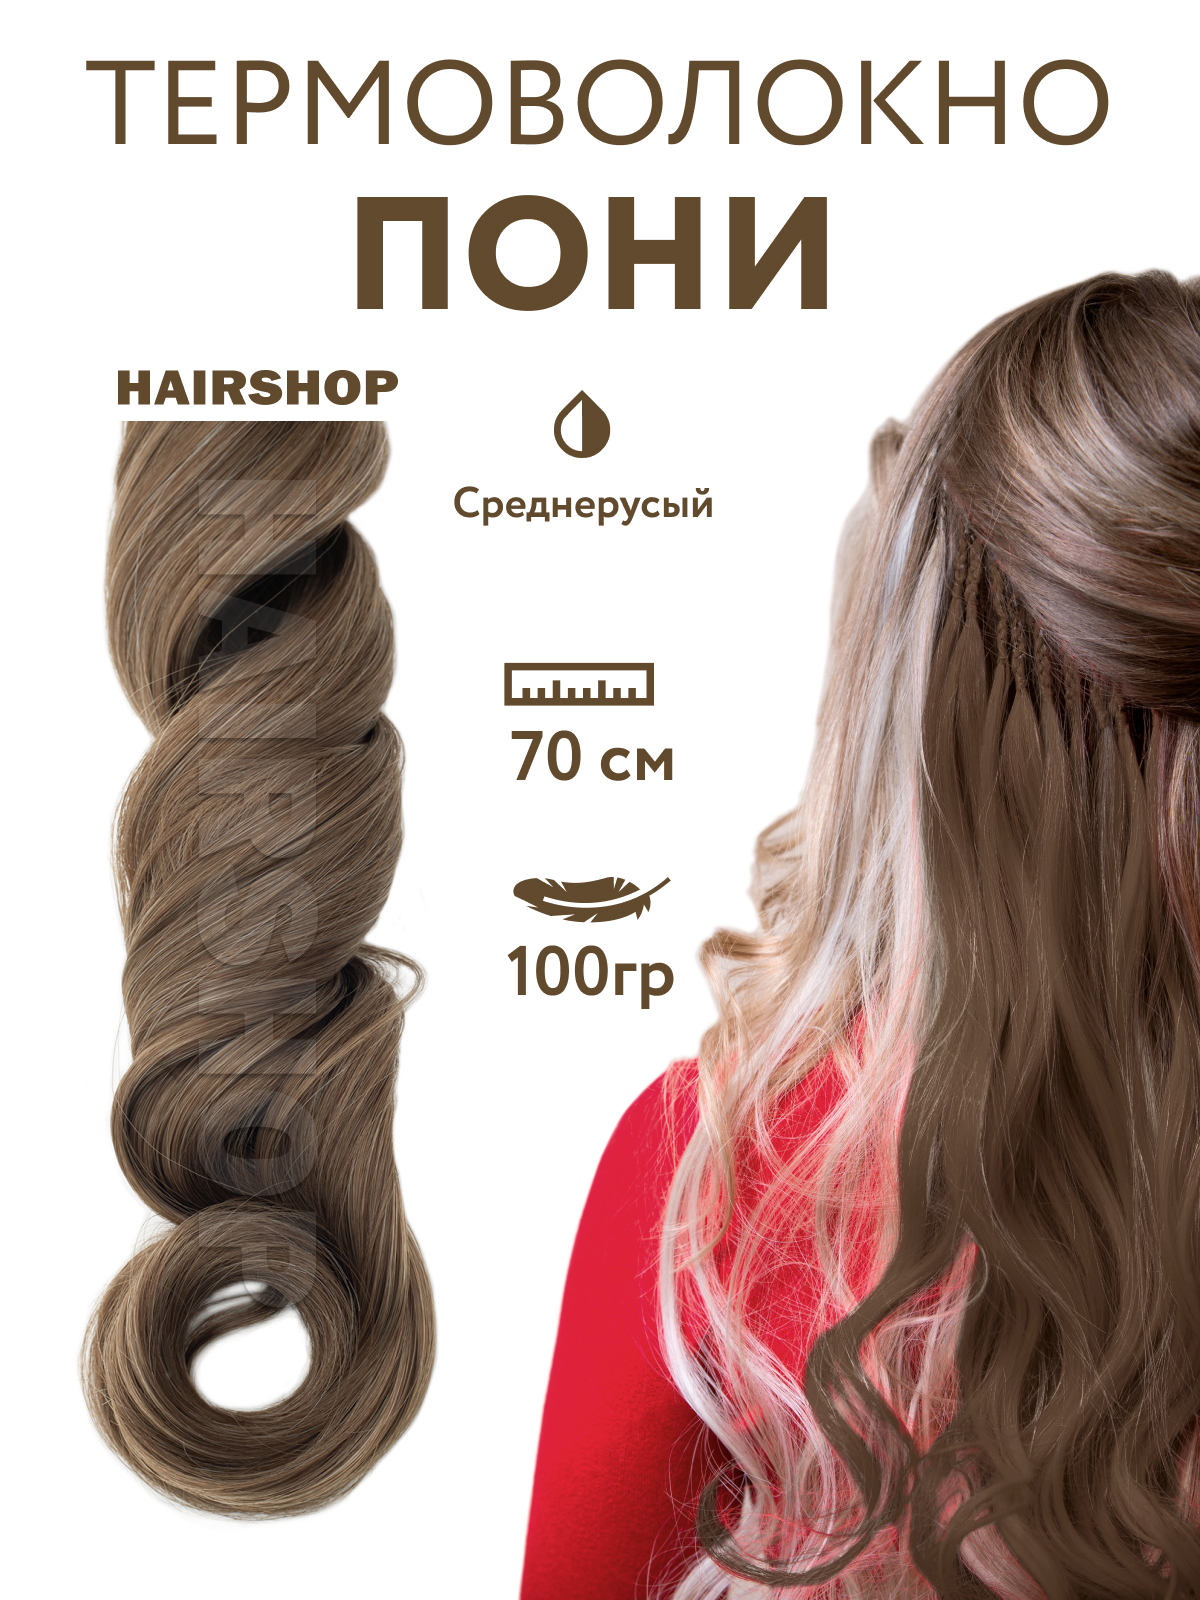 Канекалон Hairshop Пони HairUp для точечного афронаращивания Средне-русый 1,4м